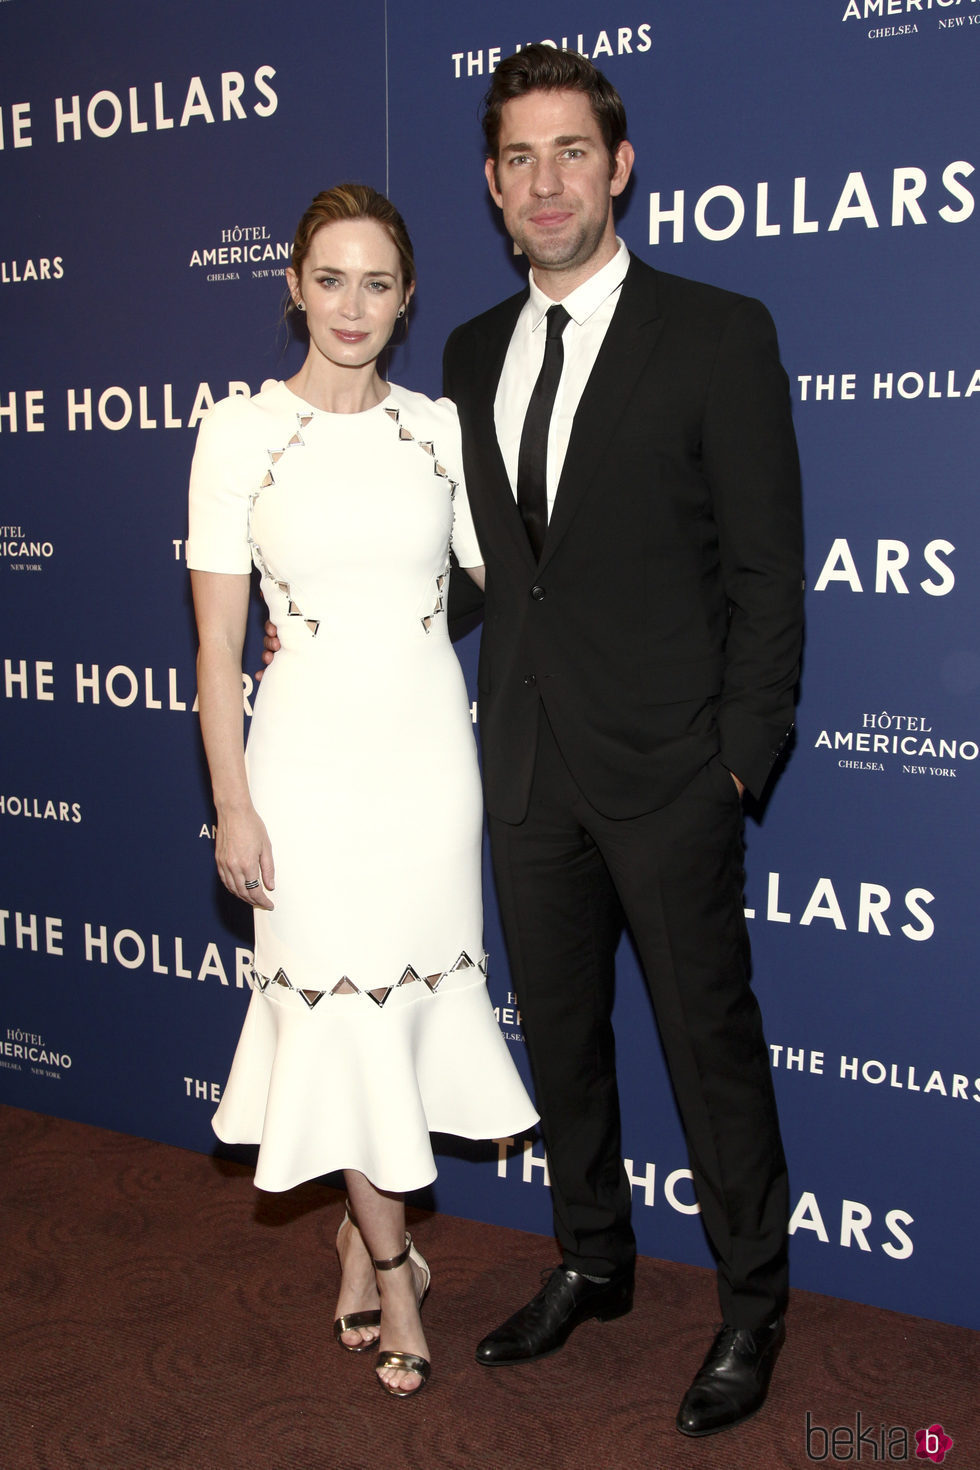 Emily Blunt reaparece tras ser madre en el estreno de 'The Hollars'